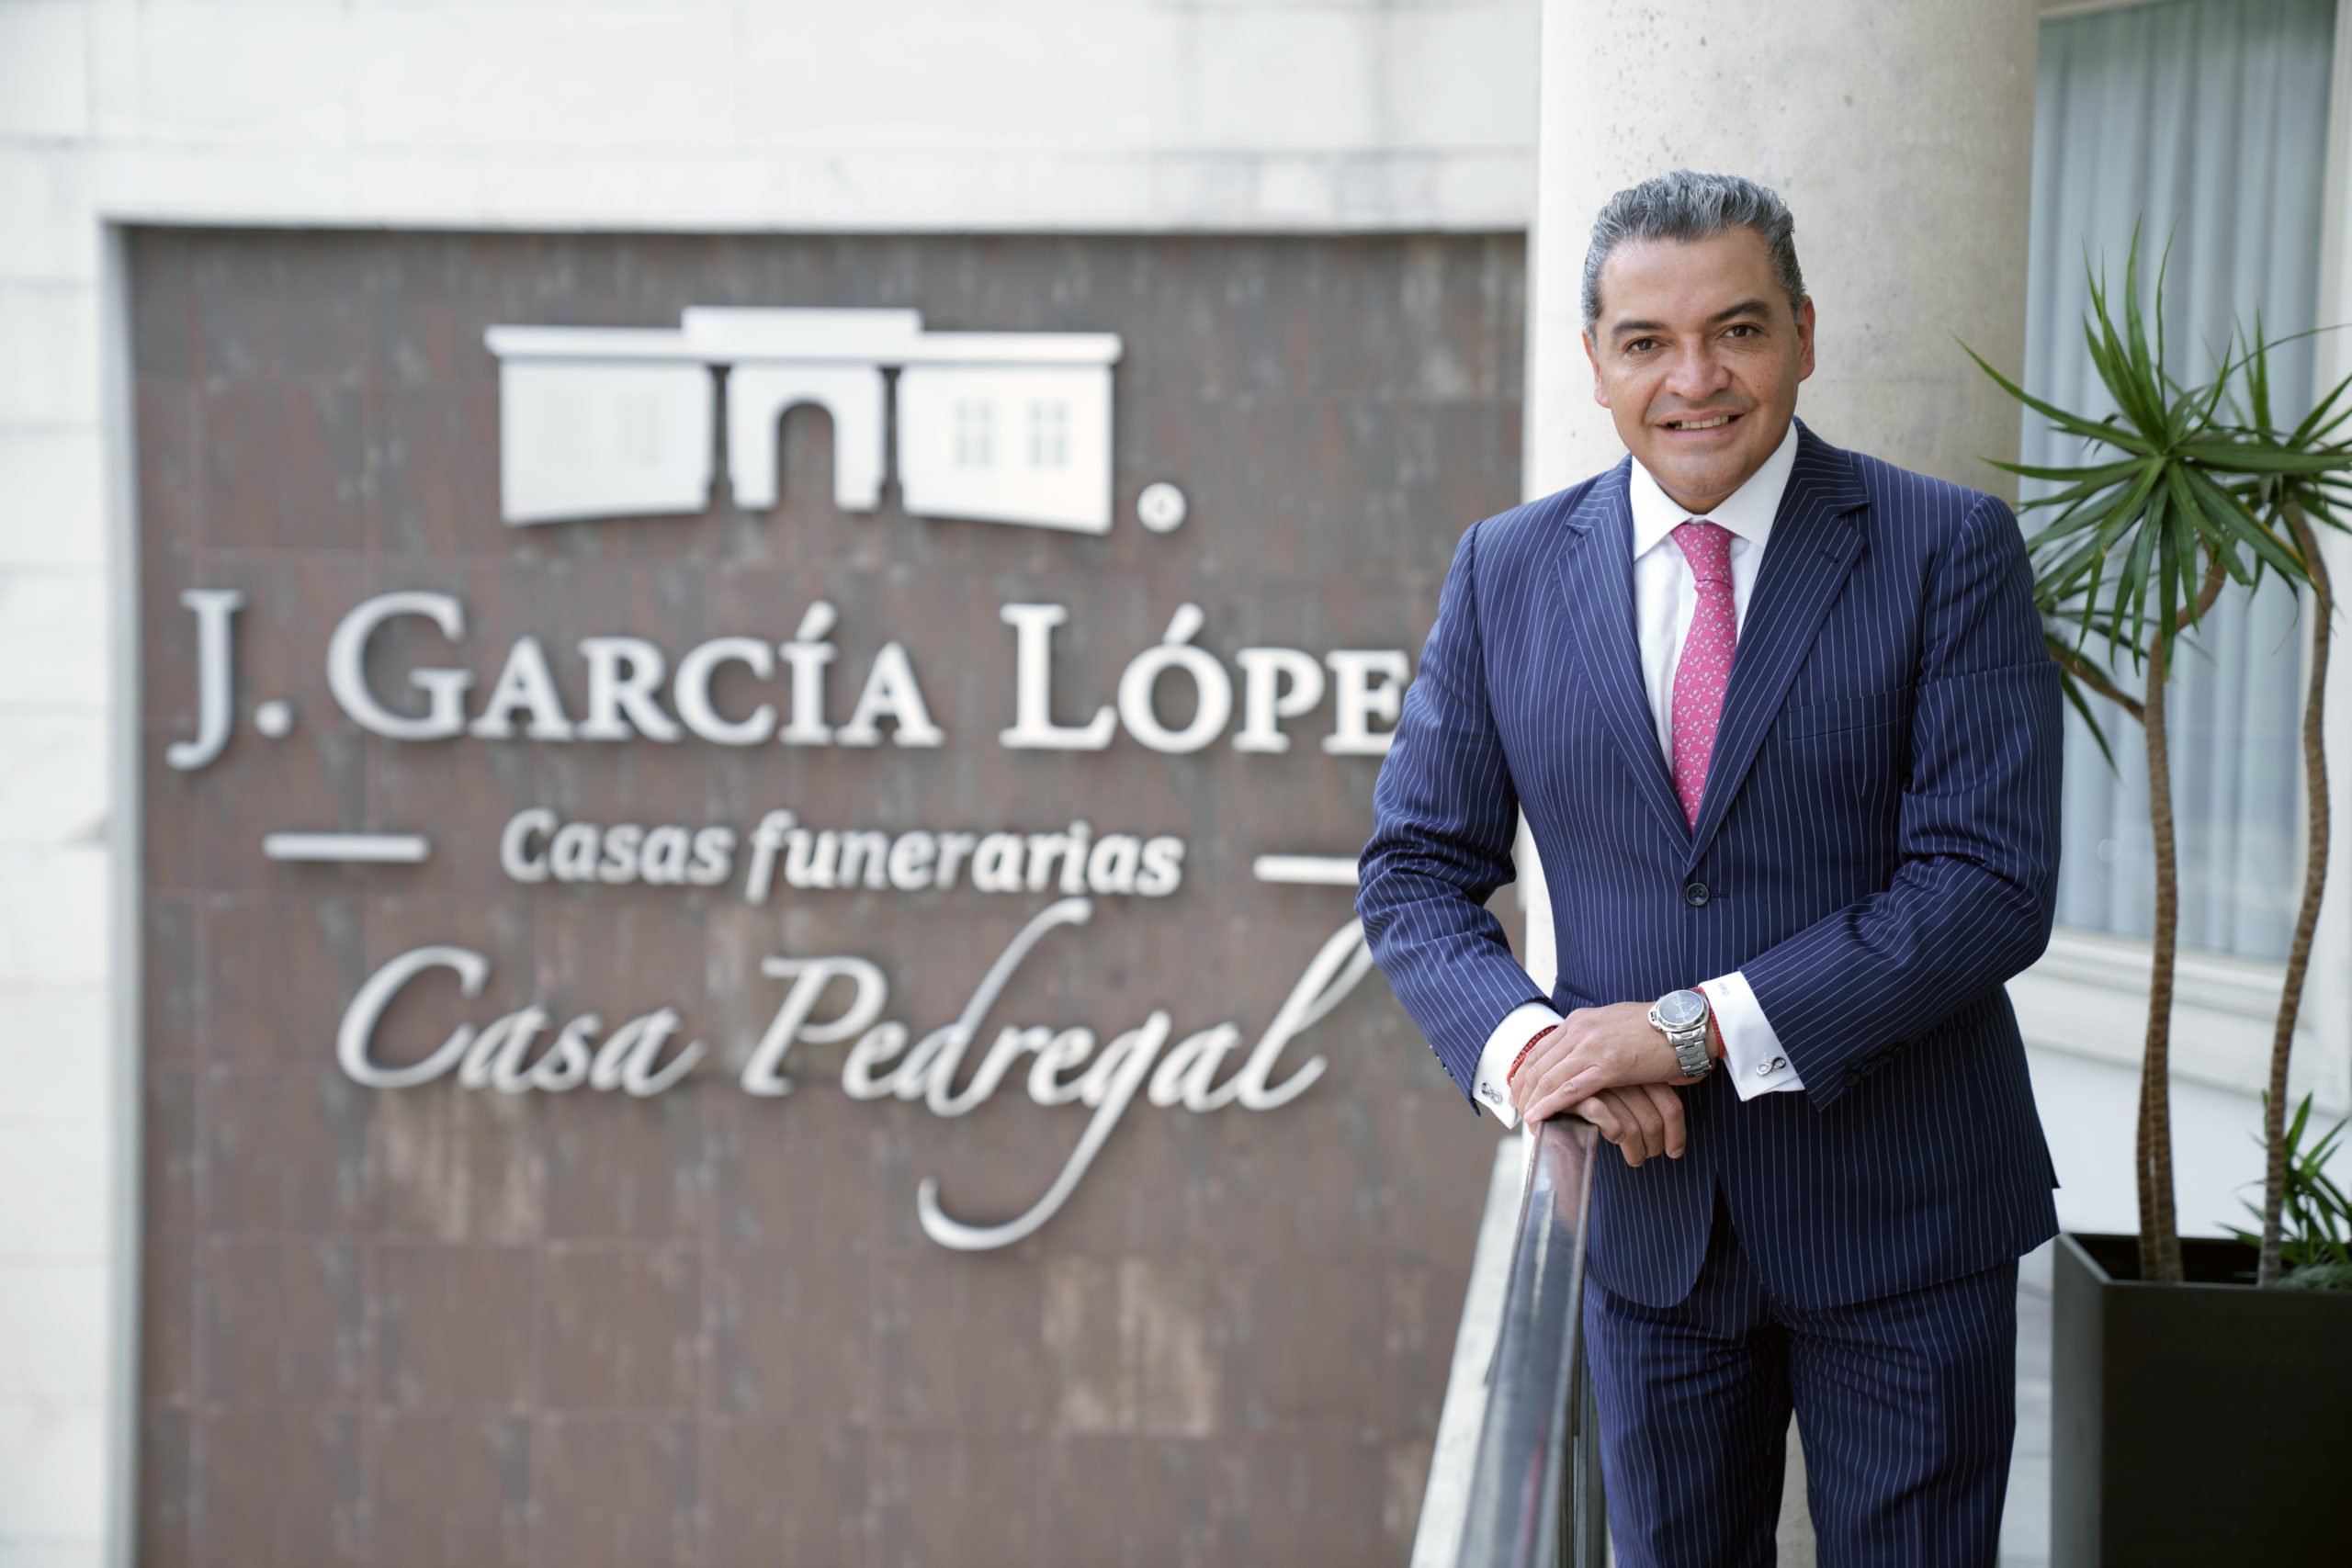 Funeraria J. García López: un negocio que brinda un servicio de principio a fin | Business Class Magazine